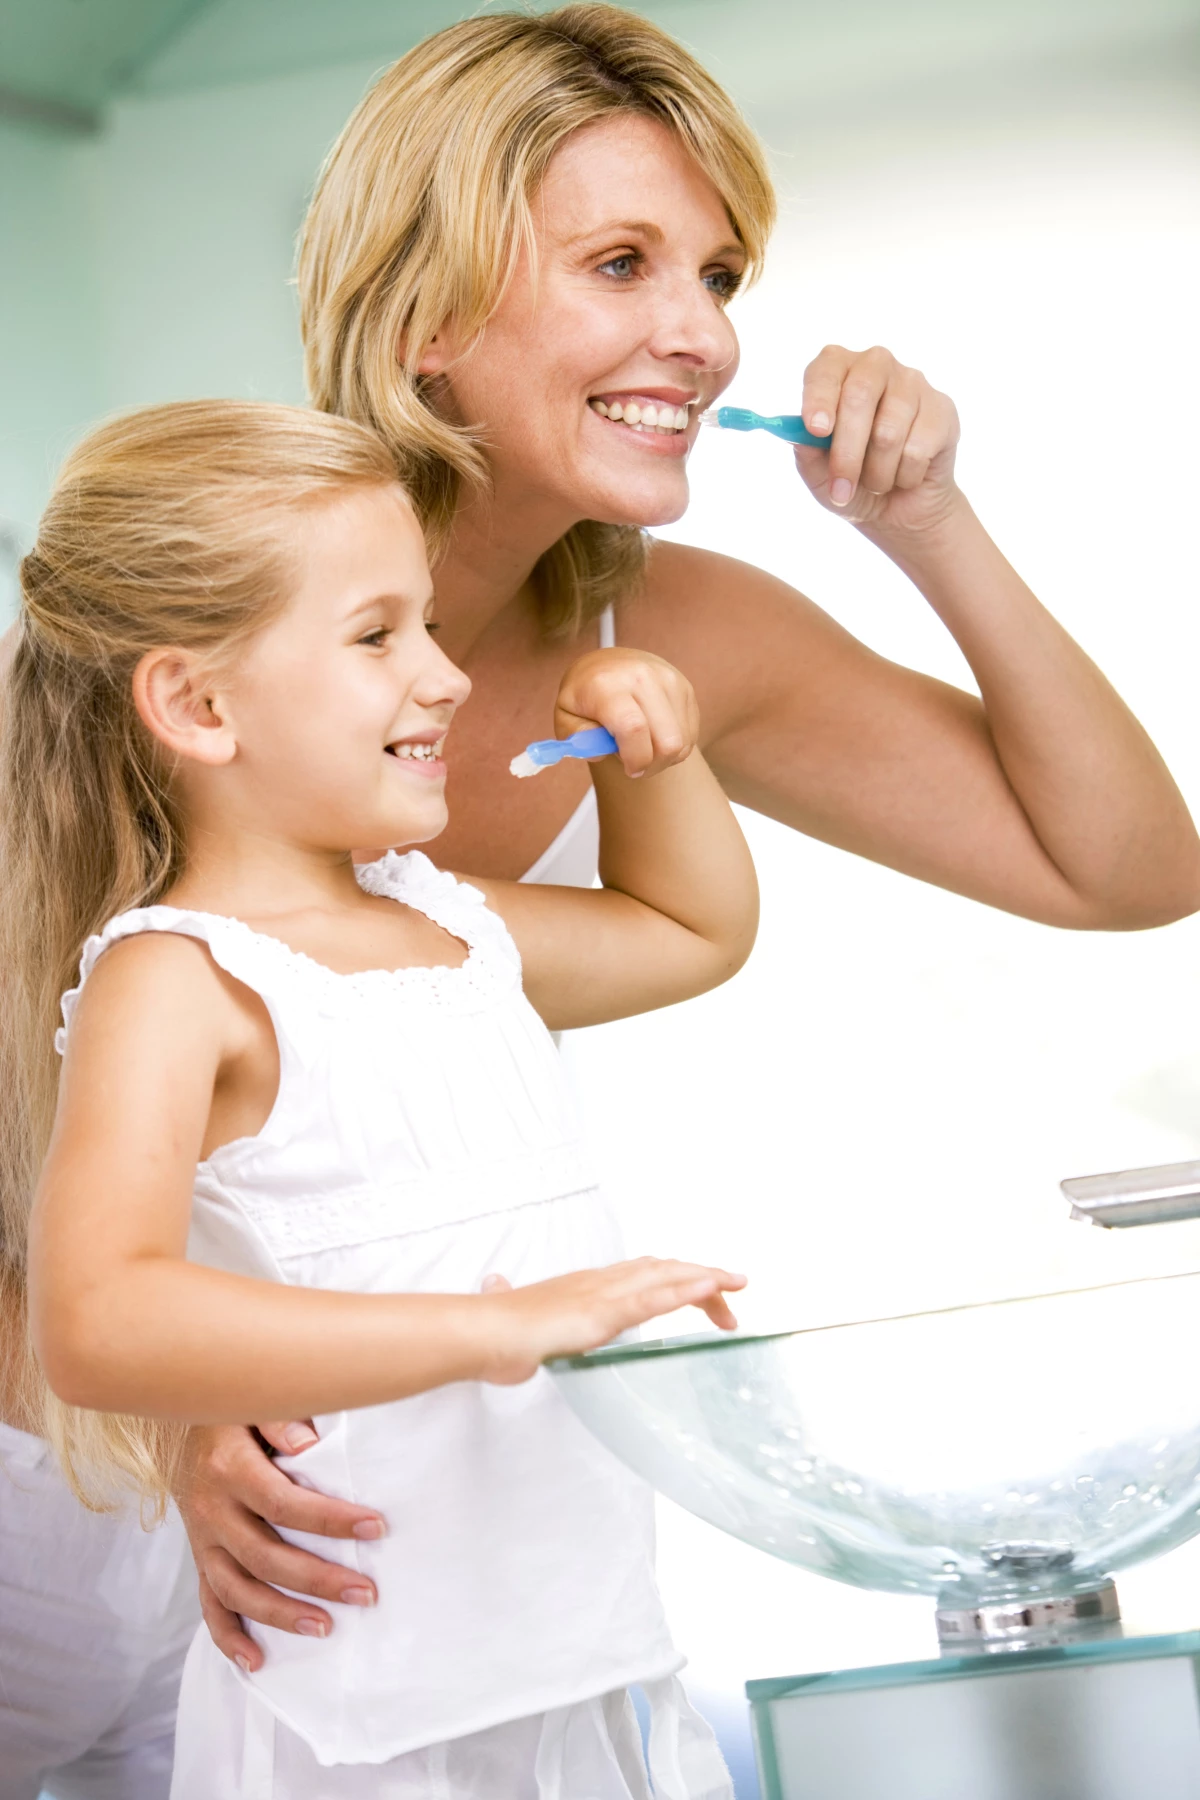 Çocukların Ağız Ve Diş Bakımında Annelere Tavsiyeler